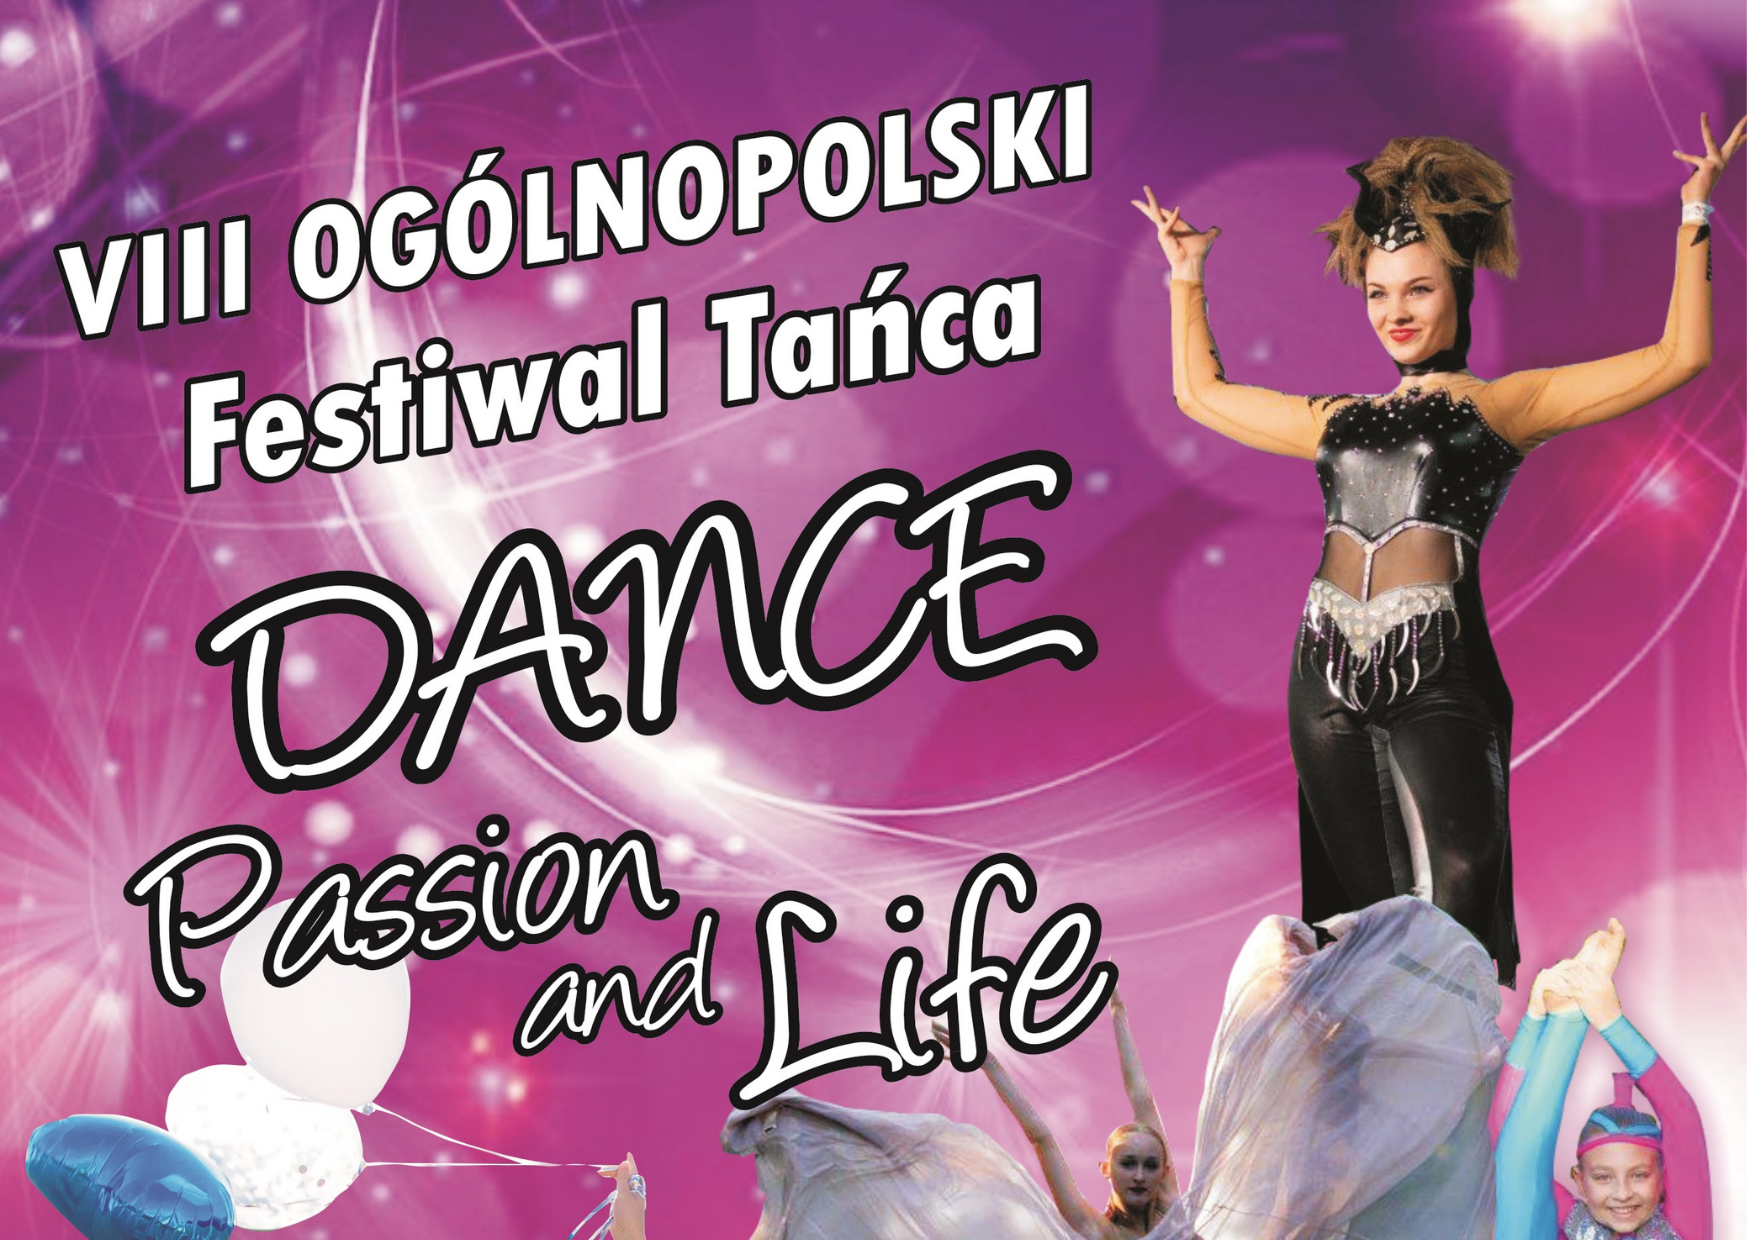 VIII Ogólnopolski Festiwal Tańca – 28 maja w Pszczewie